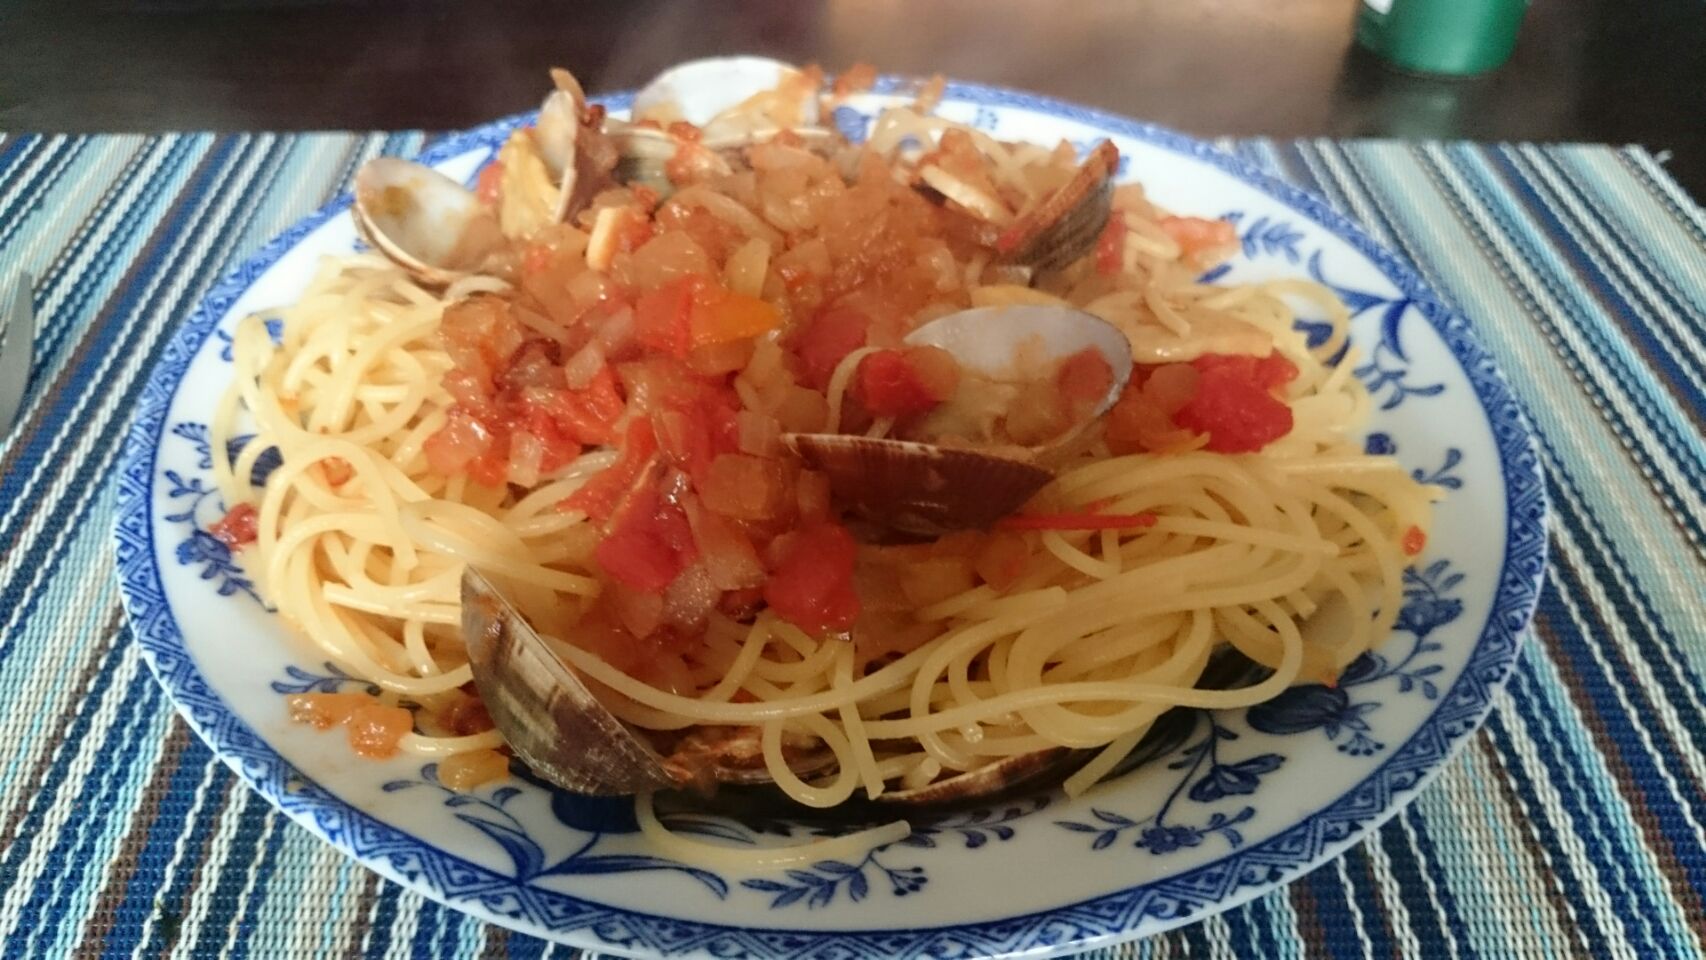 トマトと玉ねぎタップリのボンゴレロッソ。
アサリが殻の割りに小さそうだったので野菜味メインに。